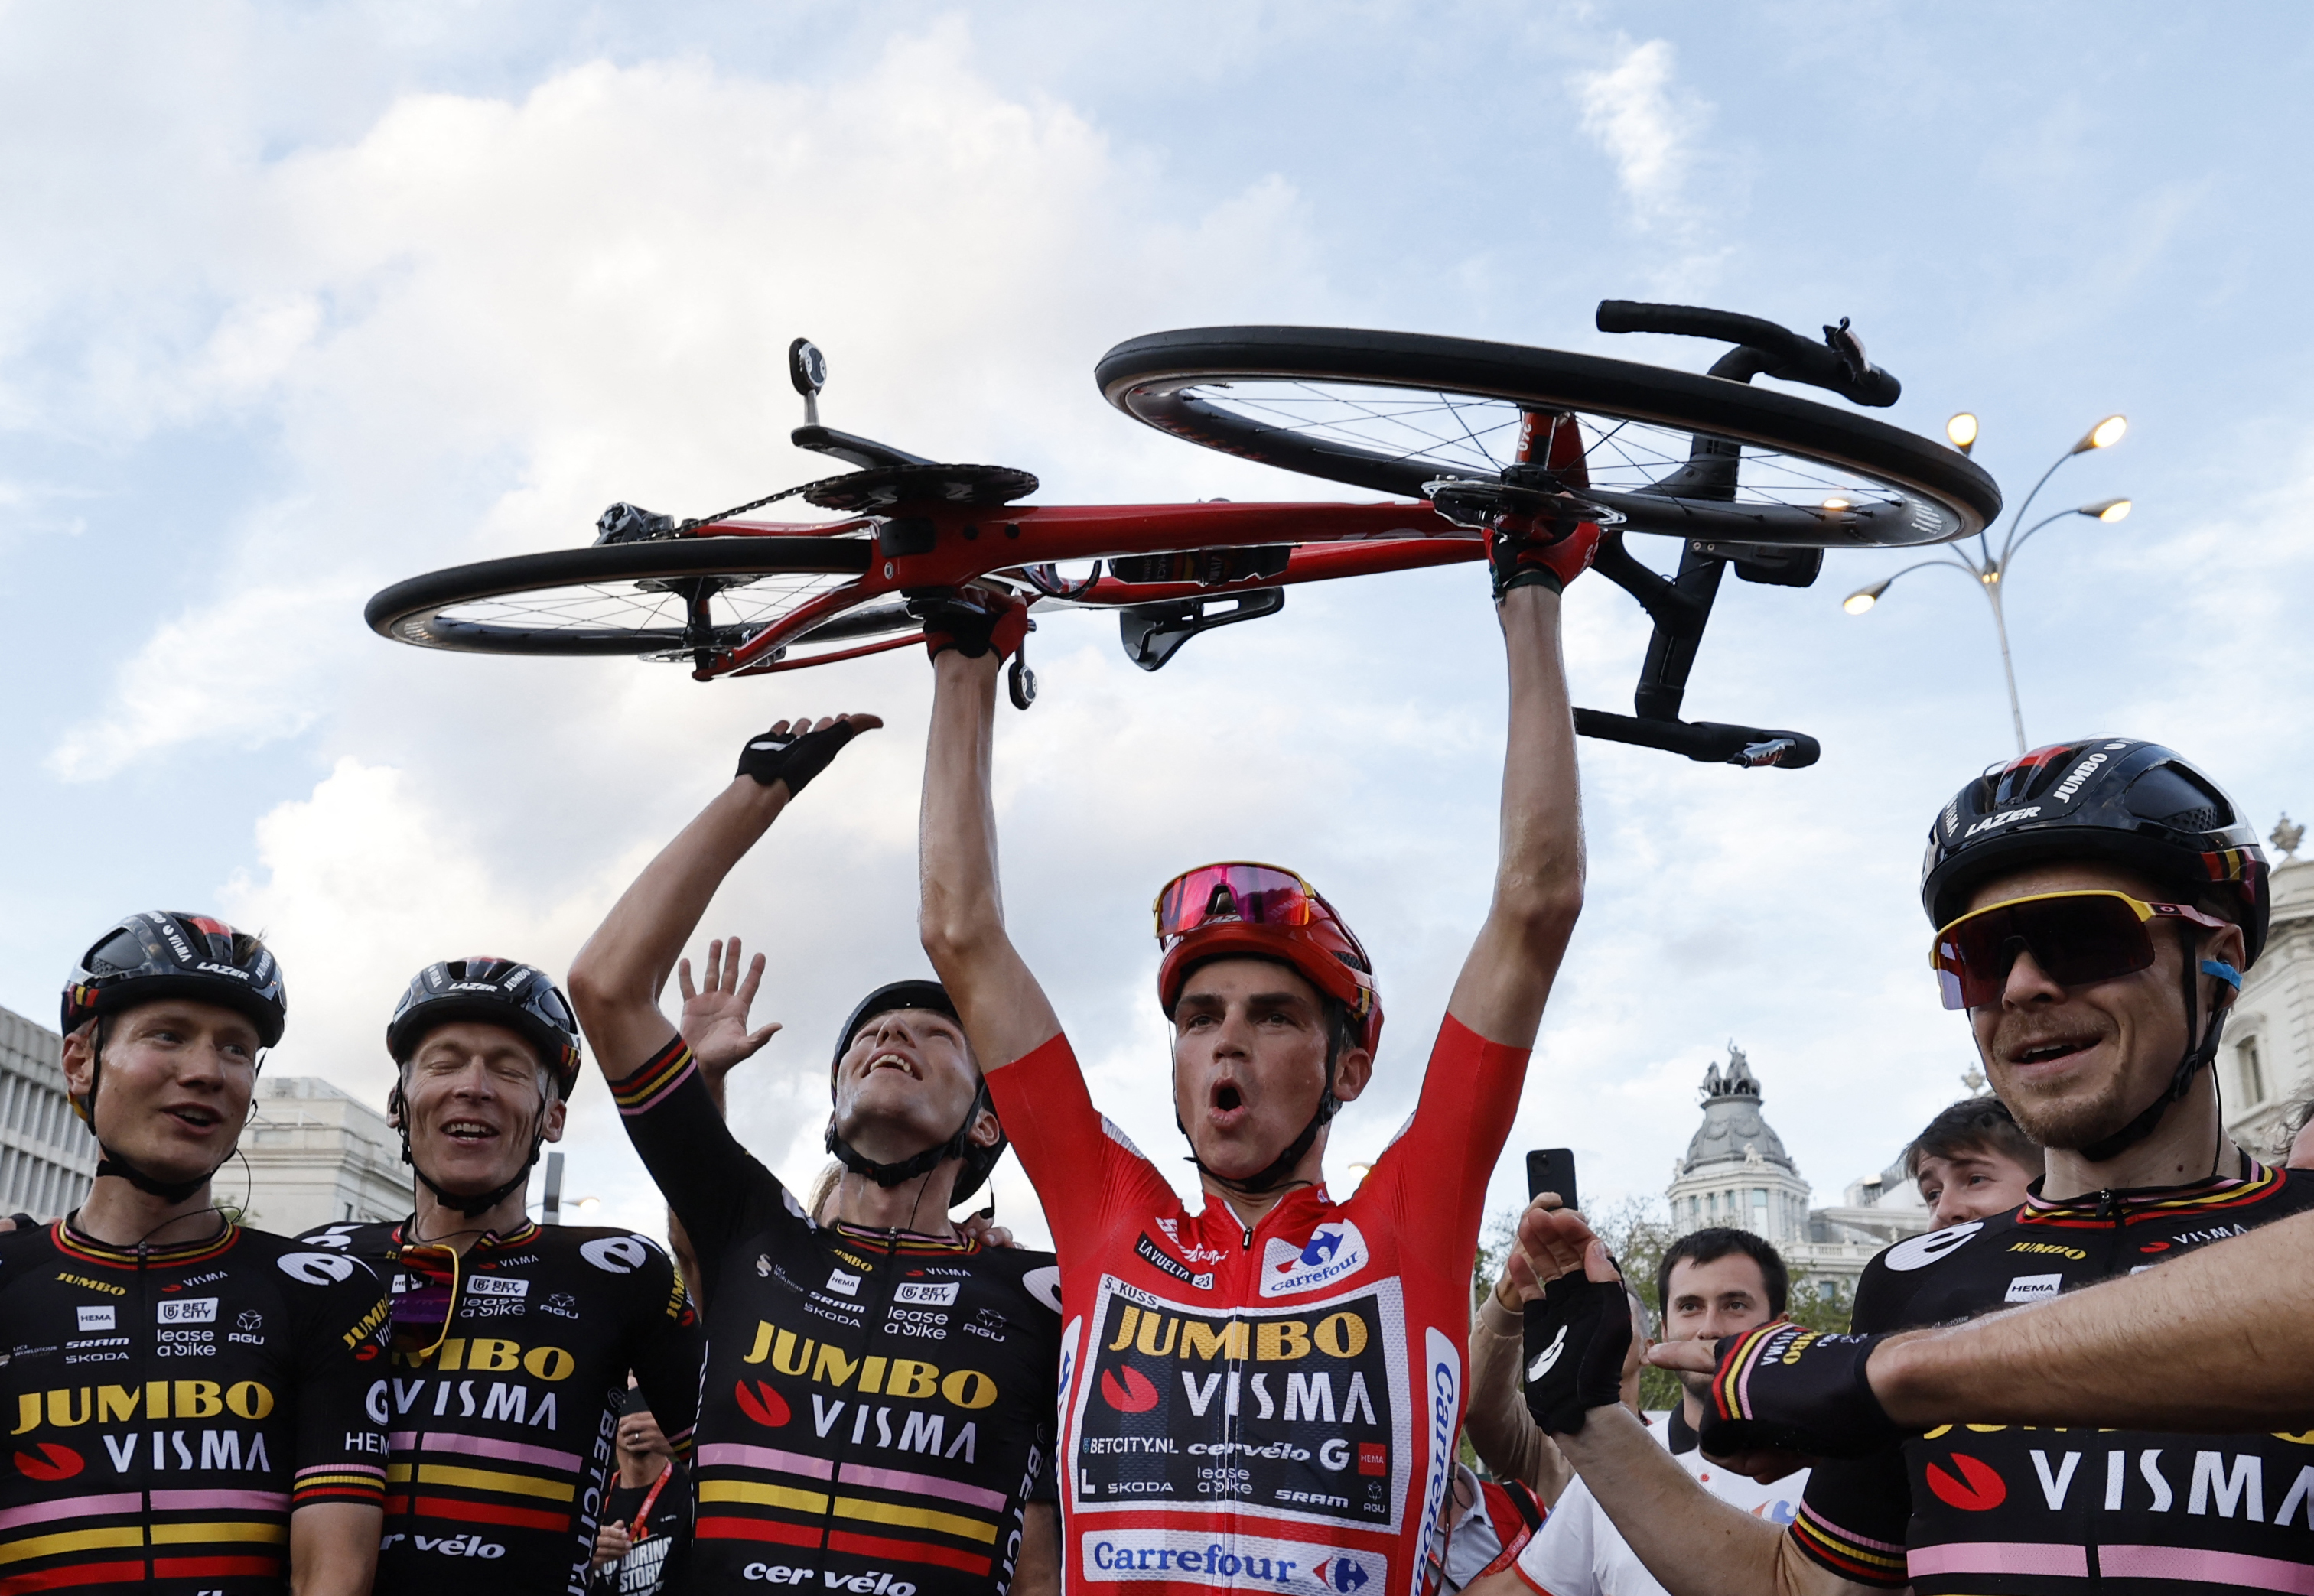 Sepp Kuss lifts his bike after winning the 2023 Vuelta a Espana